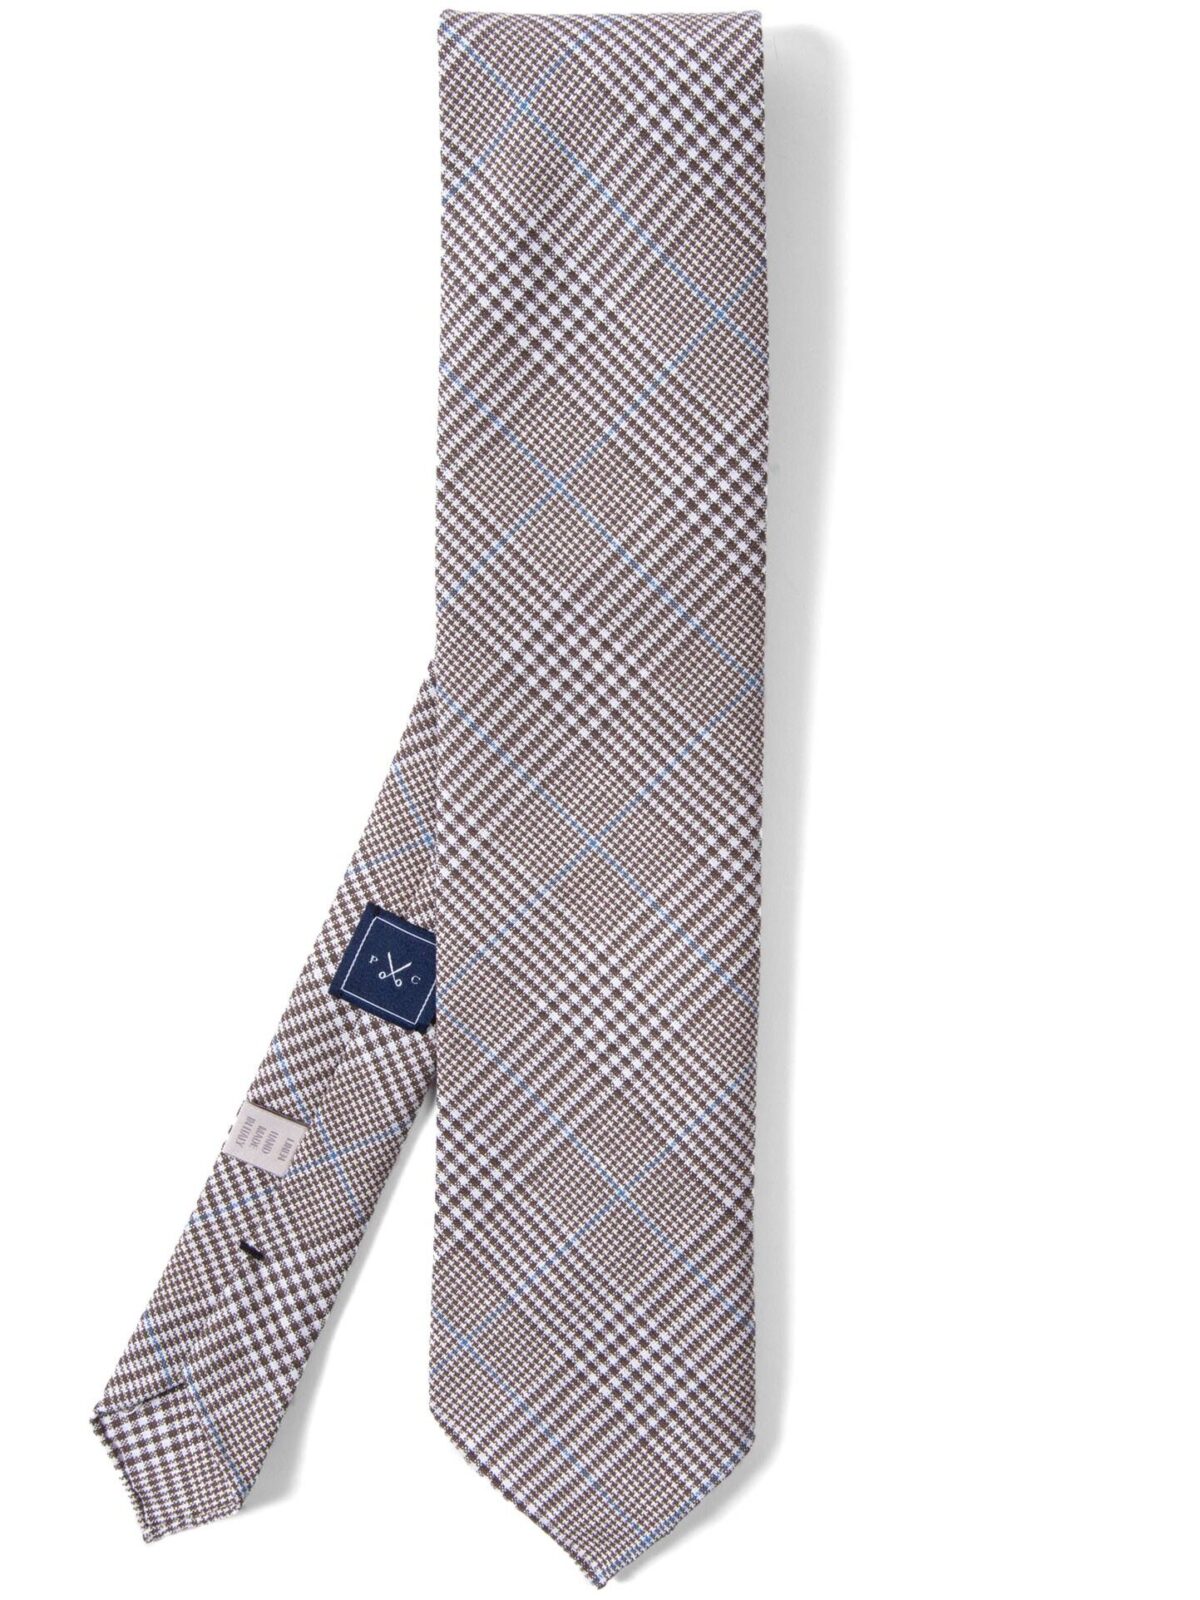 Sorrento Tan Linen Glen Plaid Tie